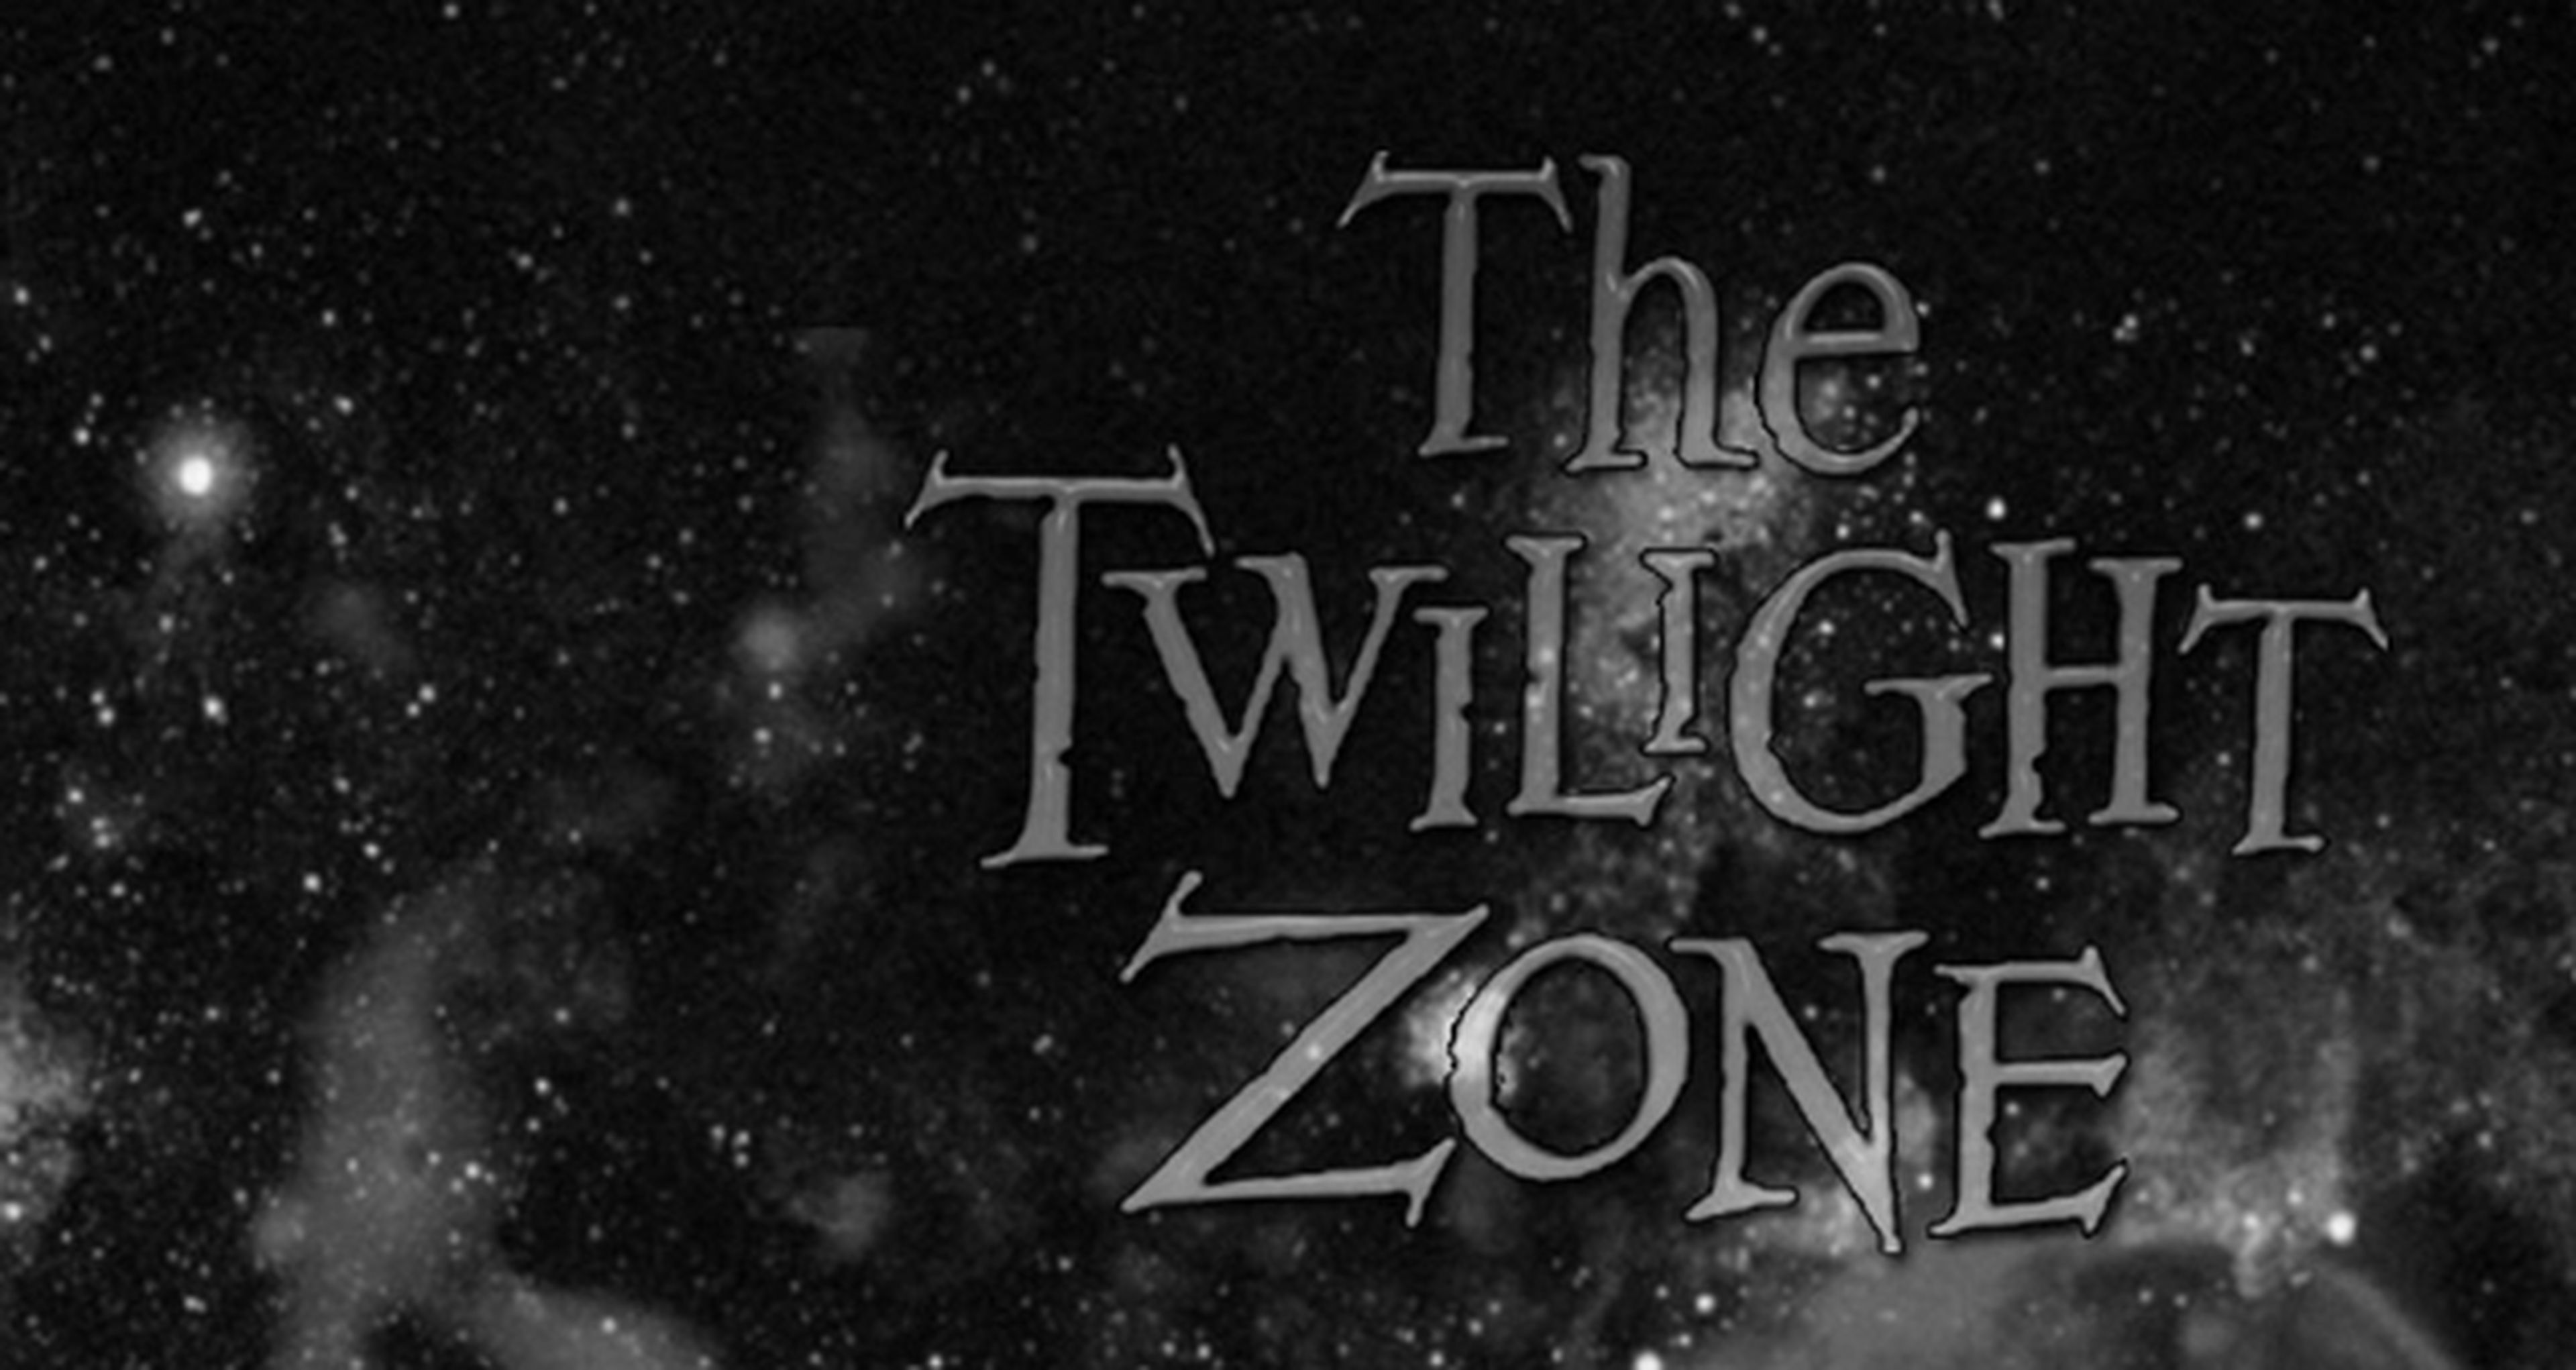 Kosinski podría dirigir The Twilight Zone